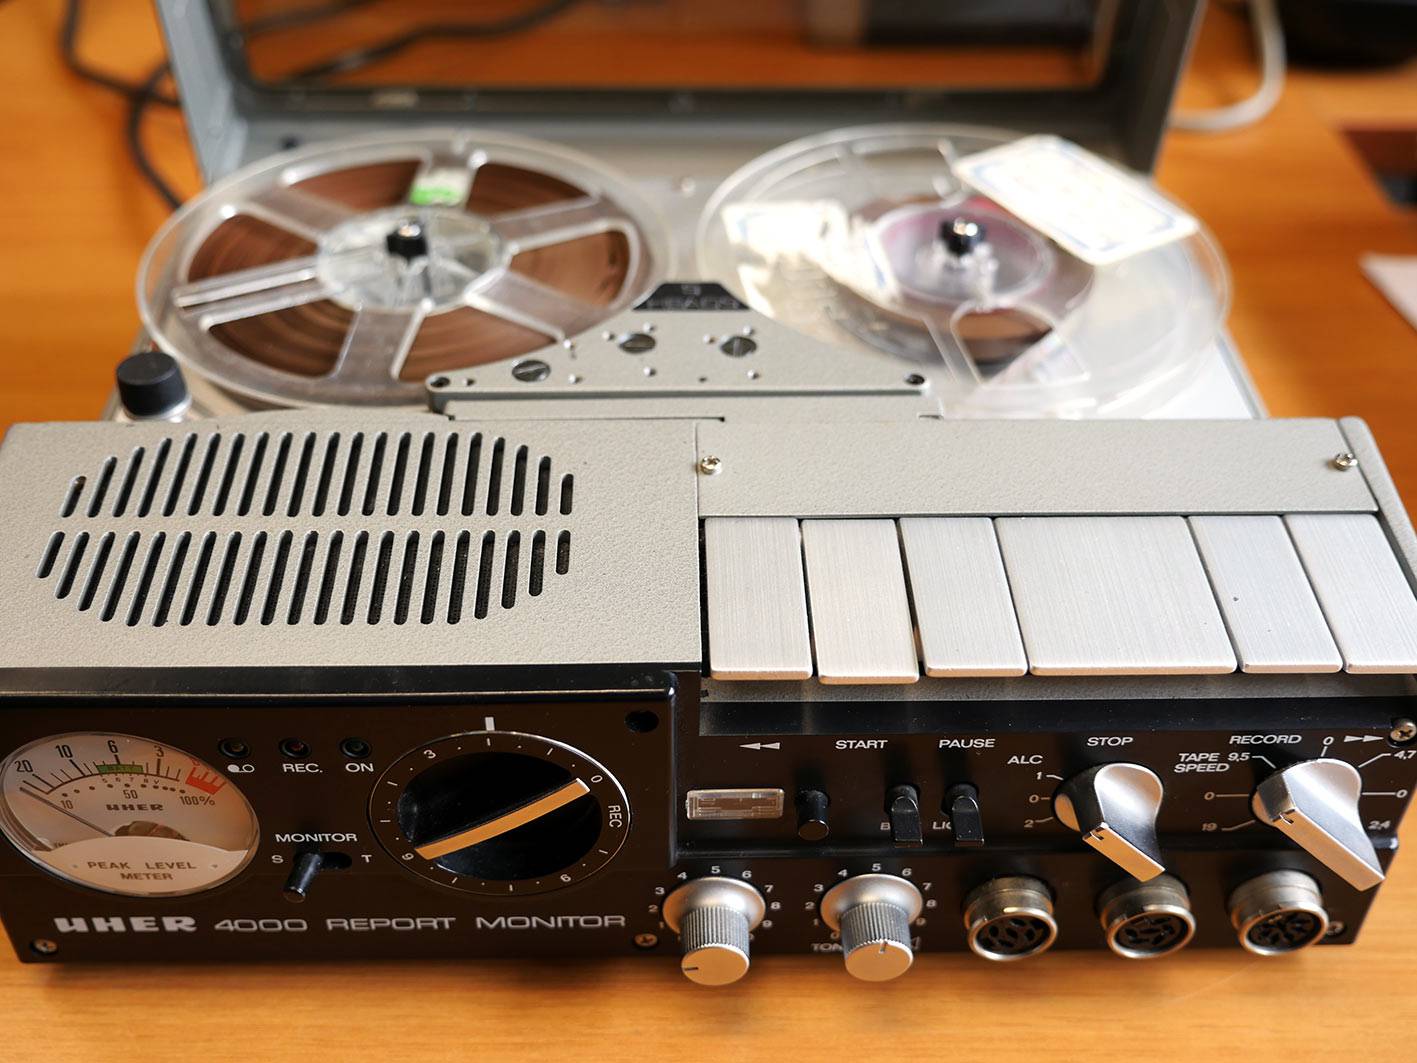 UHER 4000 report monitor : Instrument d’enregistrement et de lecture de bandes sonores, utilisé sur le terrain jusqu’aux années 1980